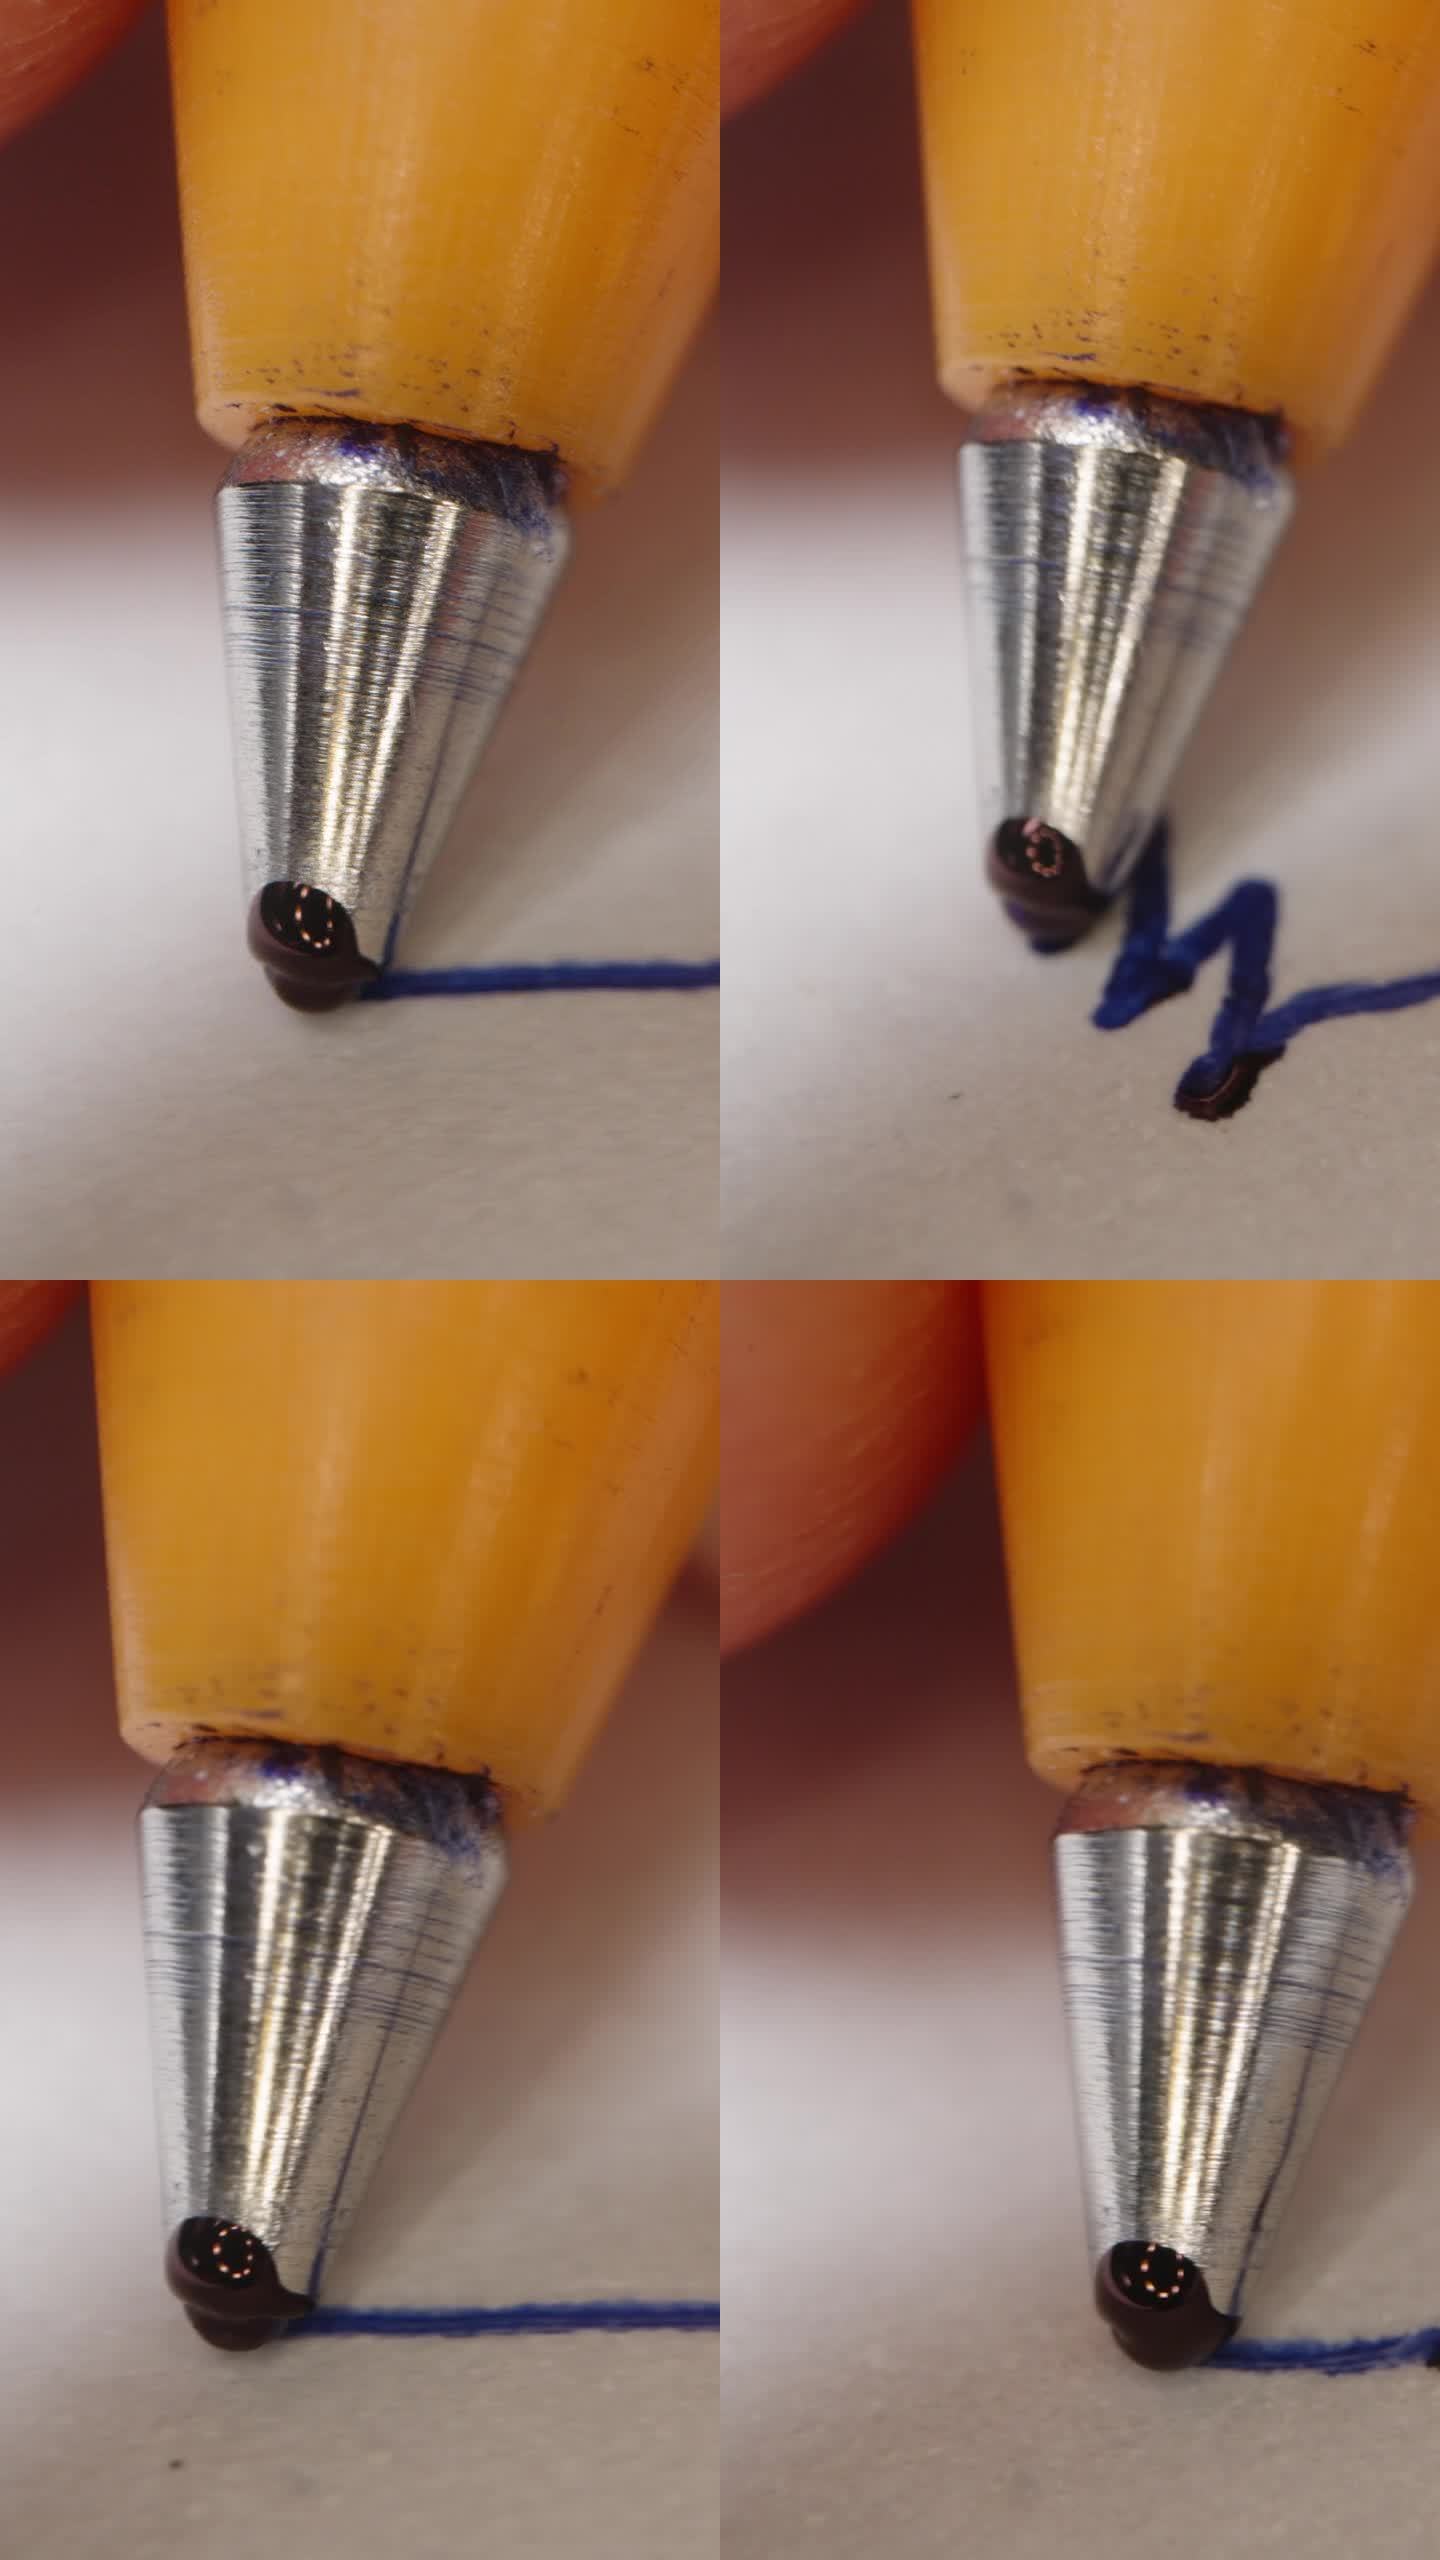 垂直视频。手里拿着圆珠笔，微距拍摄，墨水在圆珠笔的末端流淌。它在写东西。